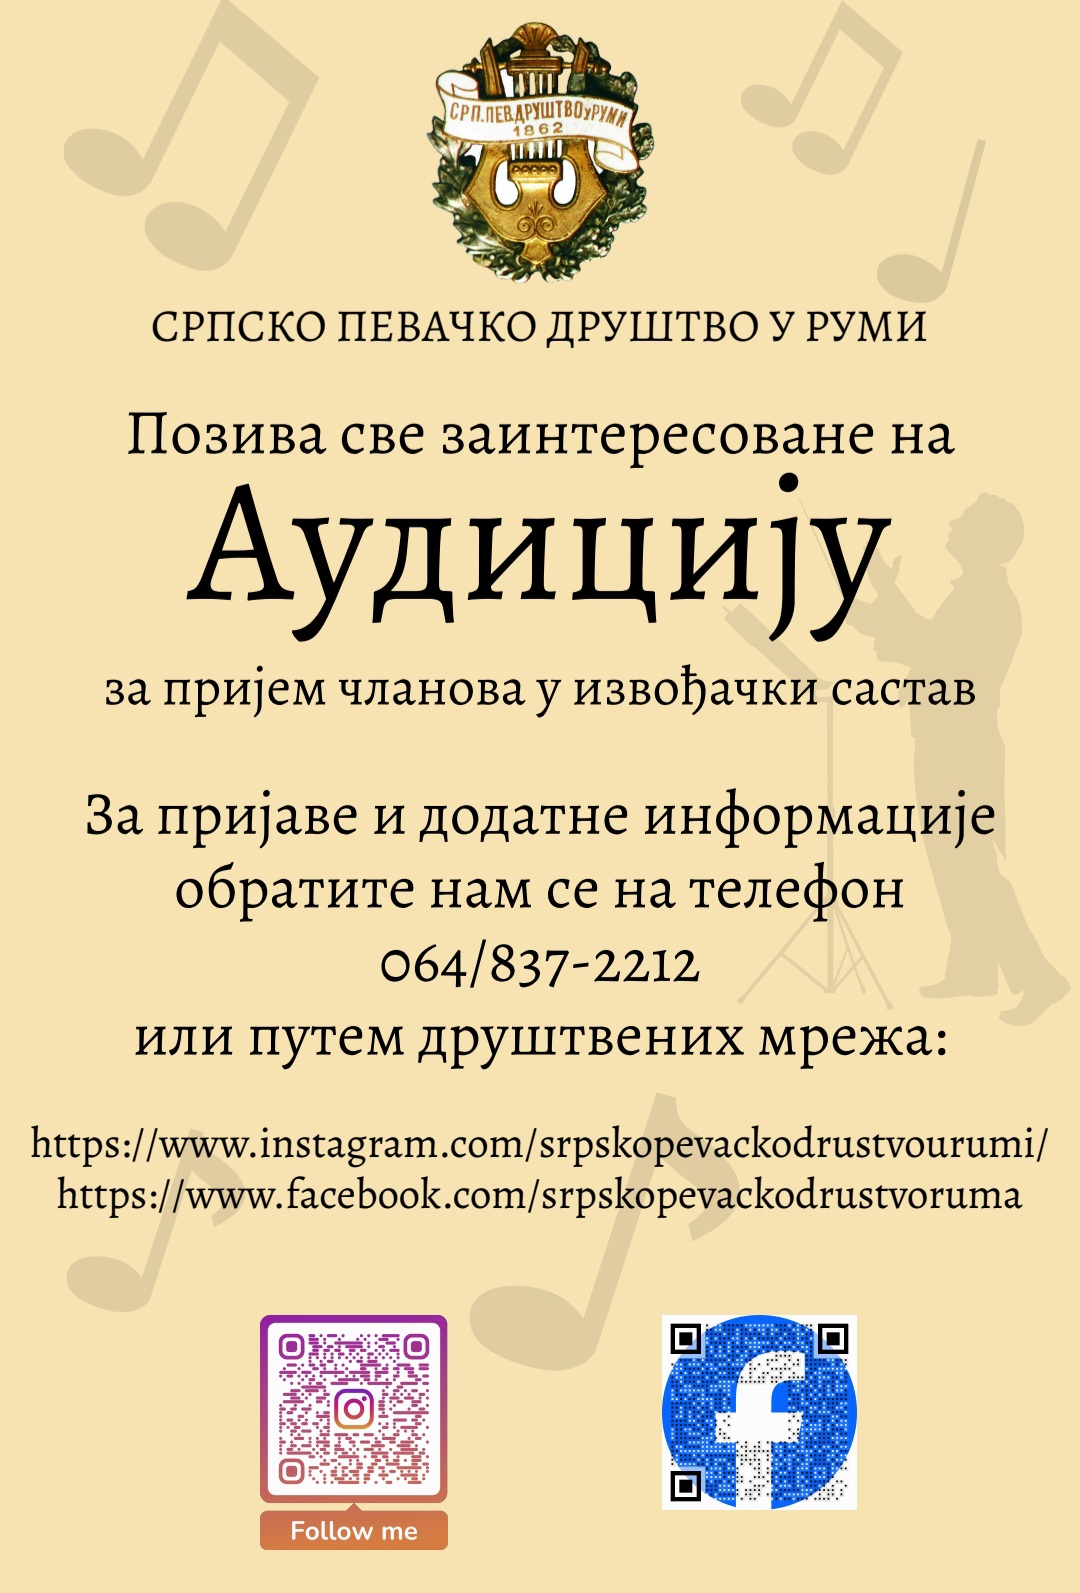 Најава: Аудиција Српског певачког друштва у Руми за пријем нових чланова у извођачки састав хора